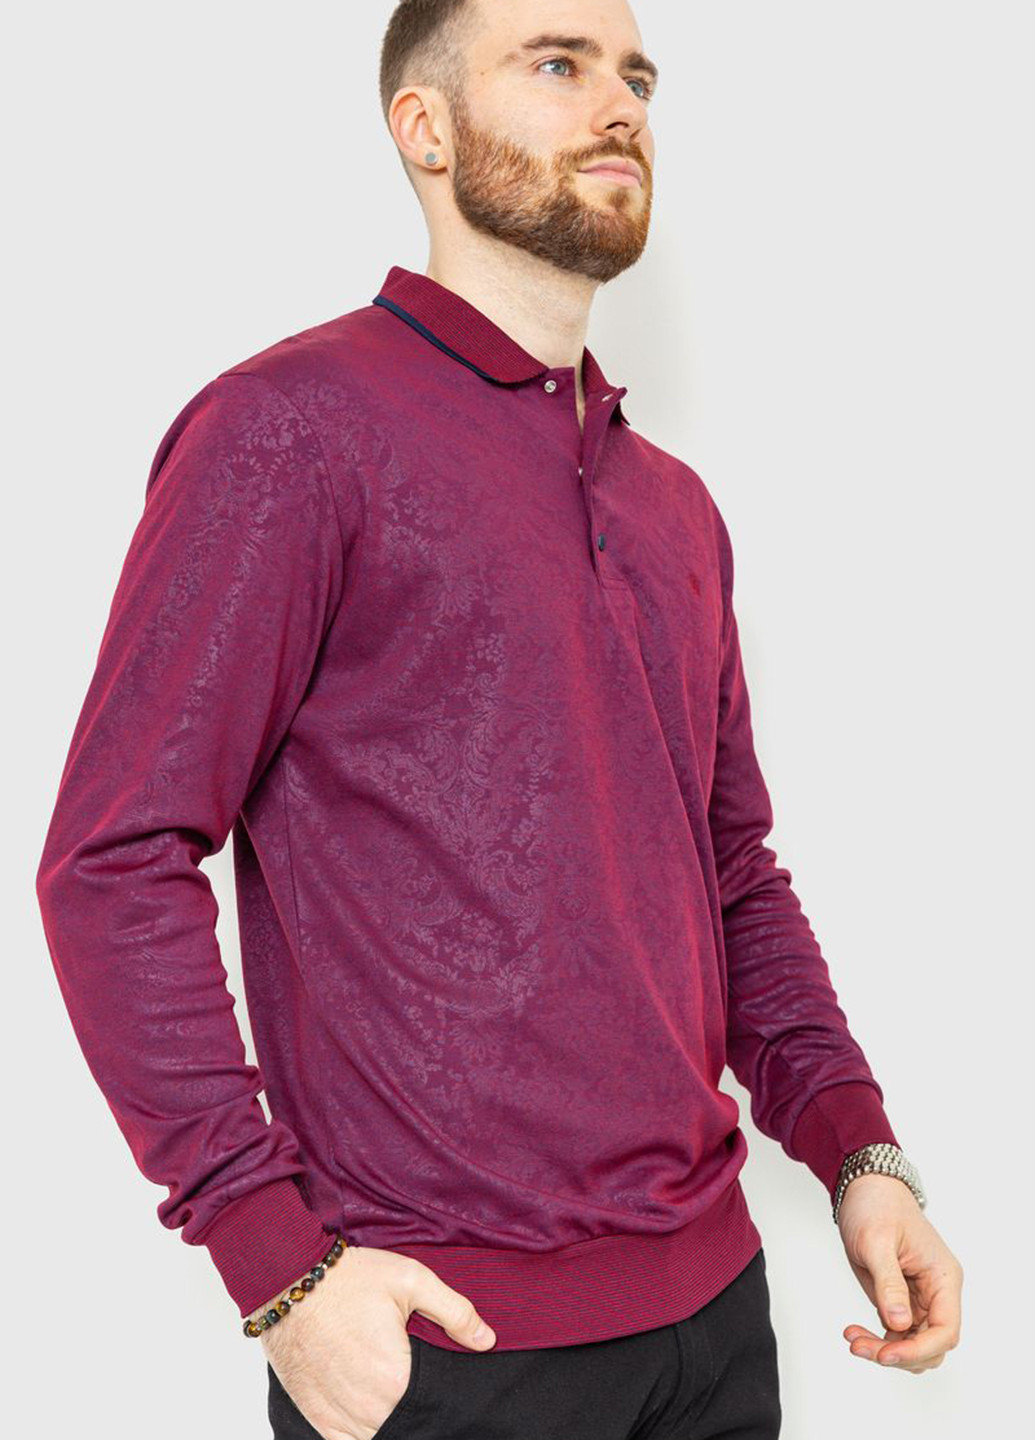 Сливовая футболка-поло для мужчин Ager с абстрактным узором